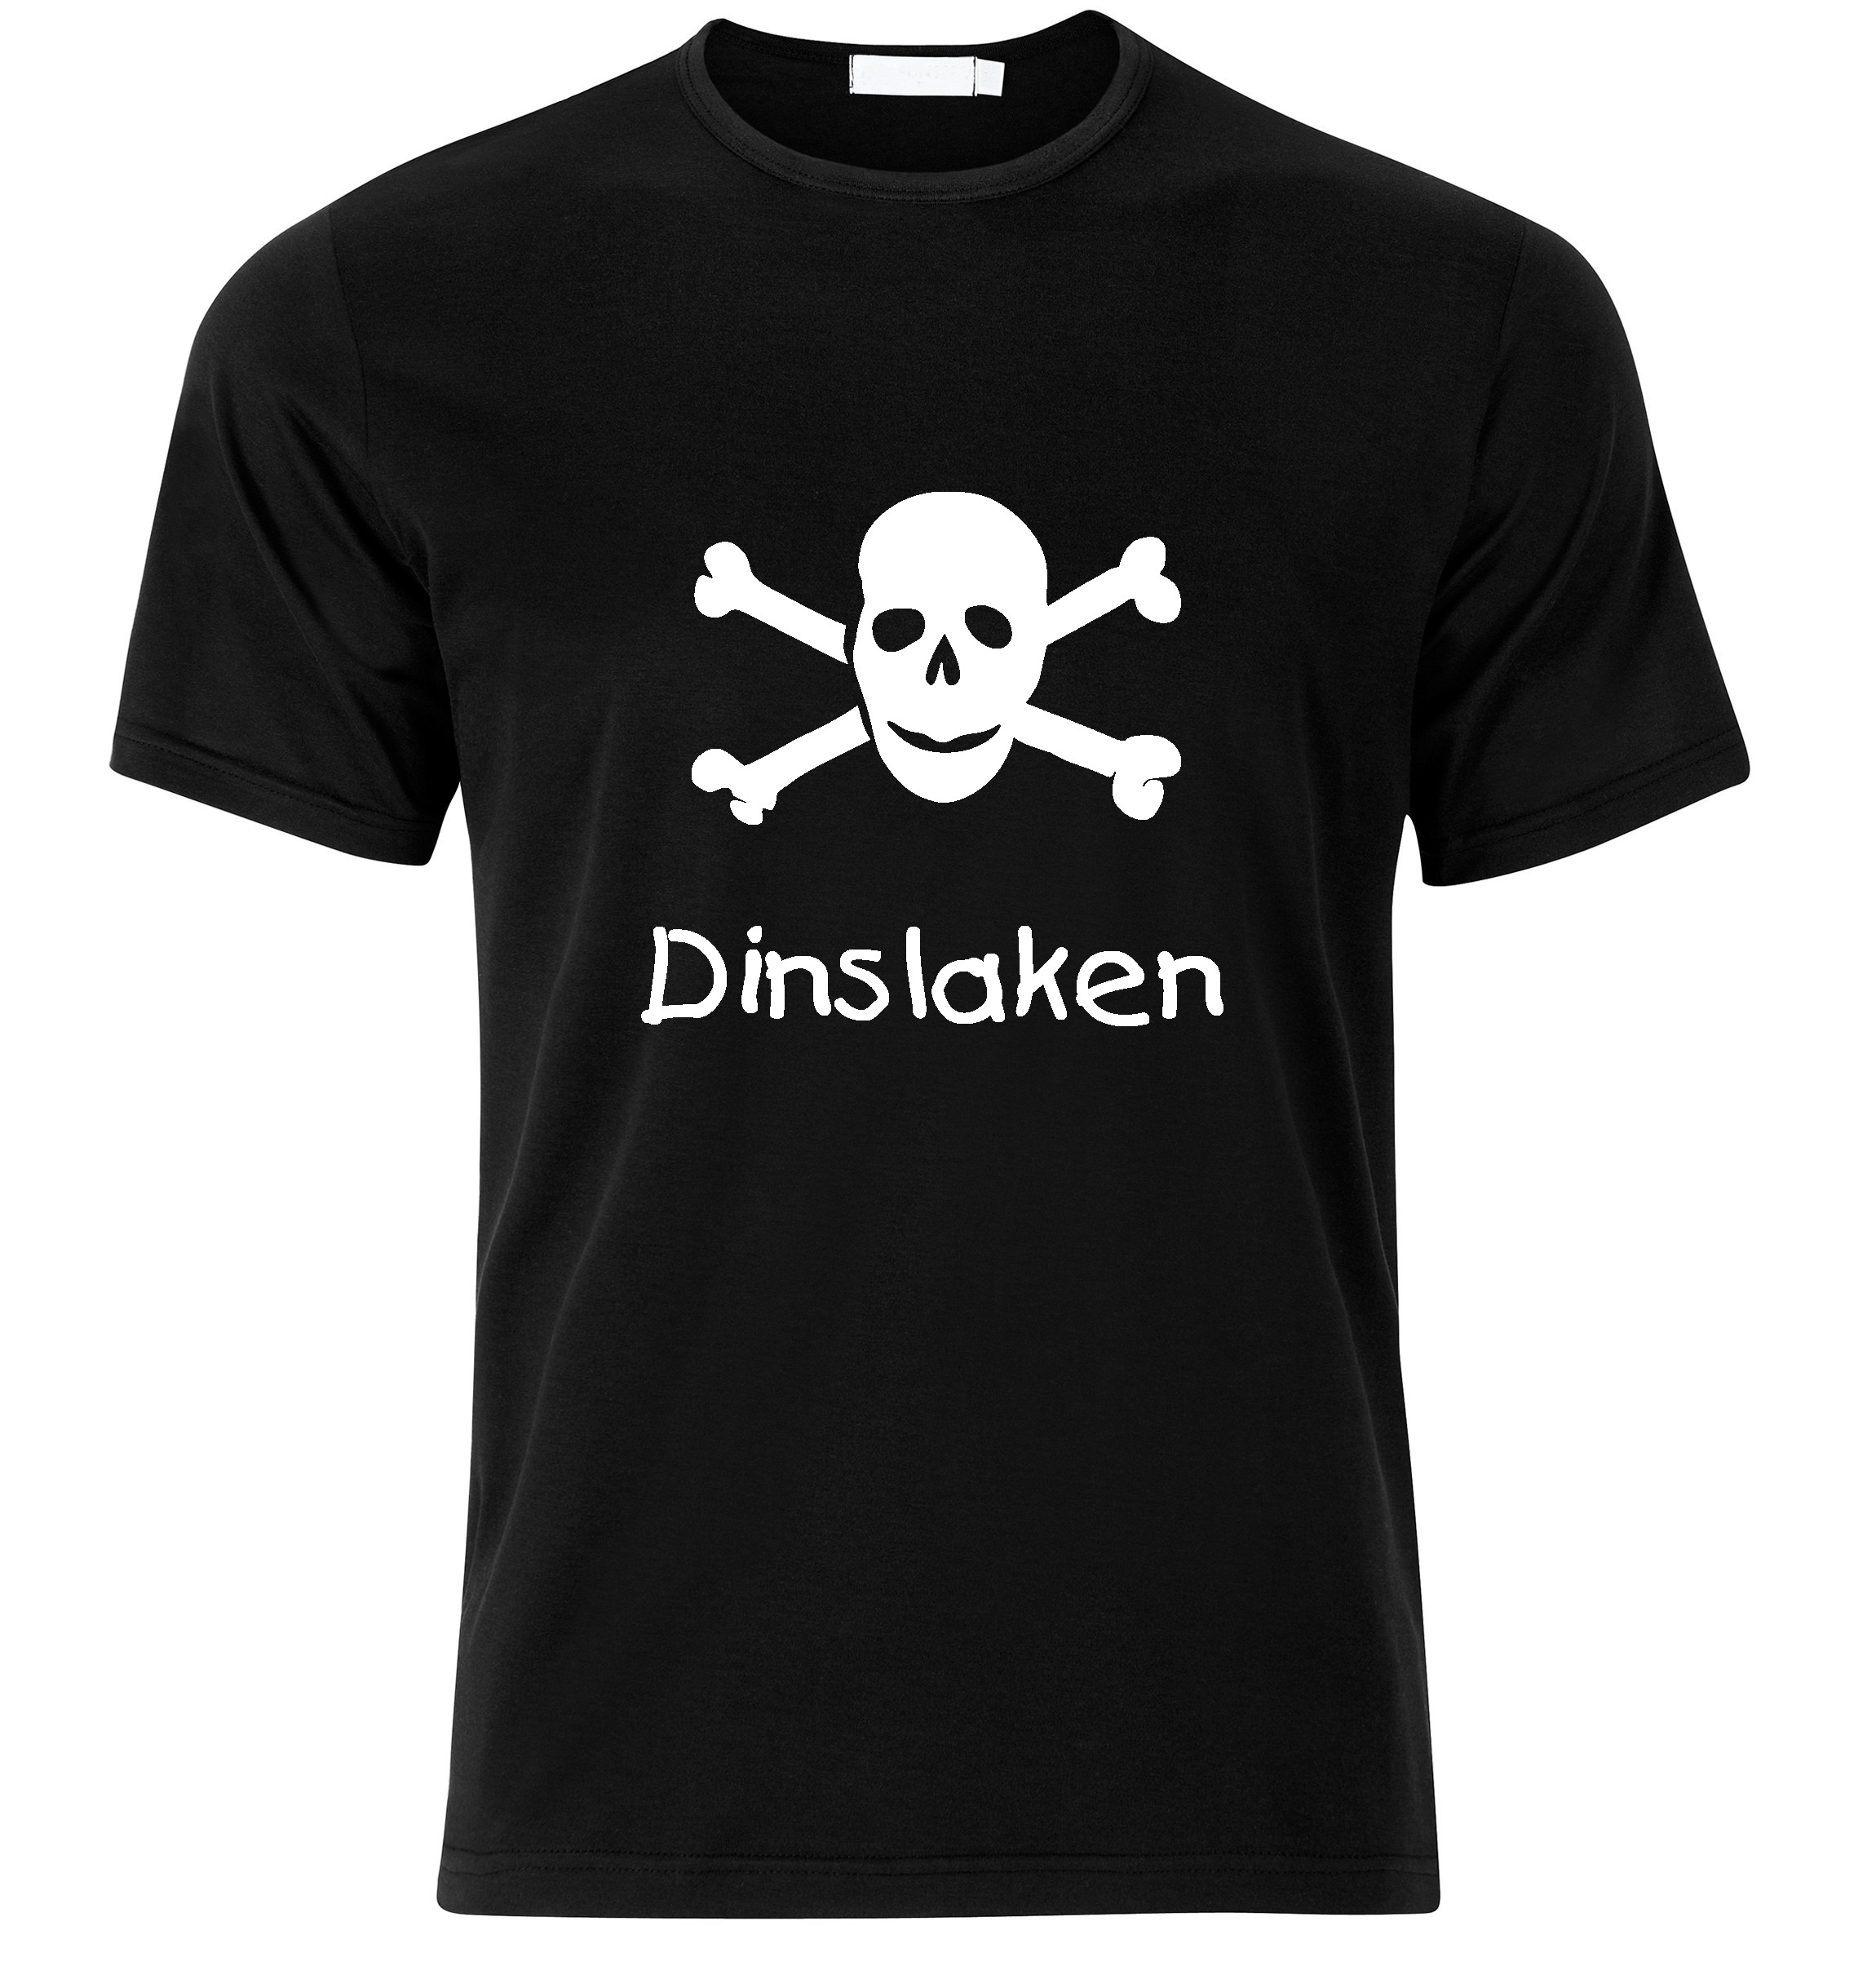 T-Shirt Dinslaken Jolly Roger, Totenkopf